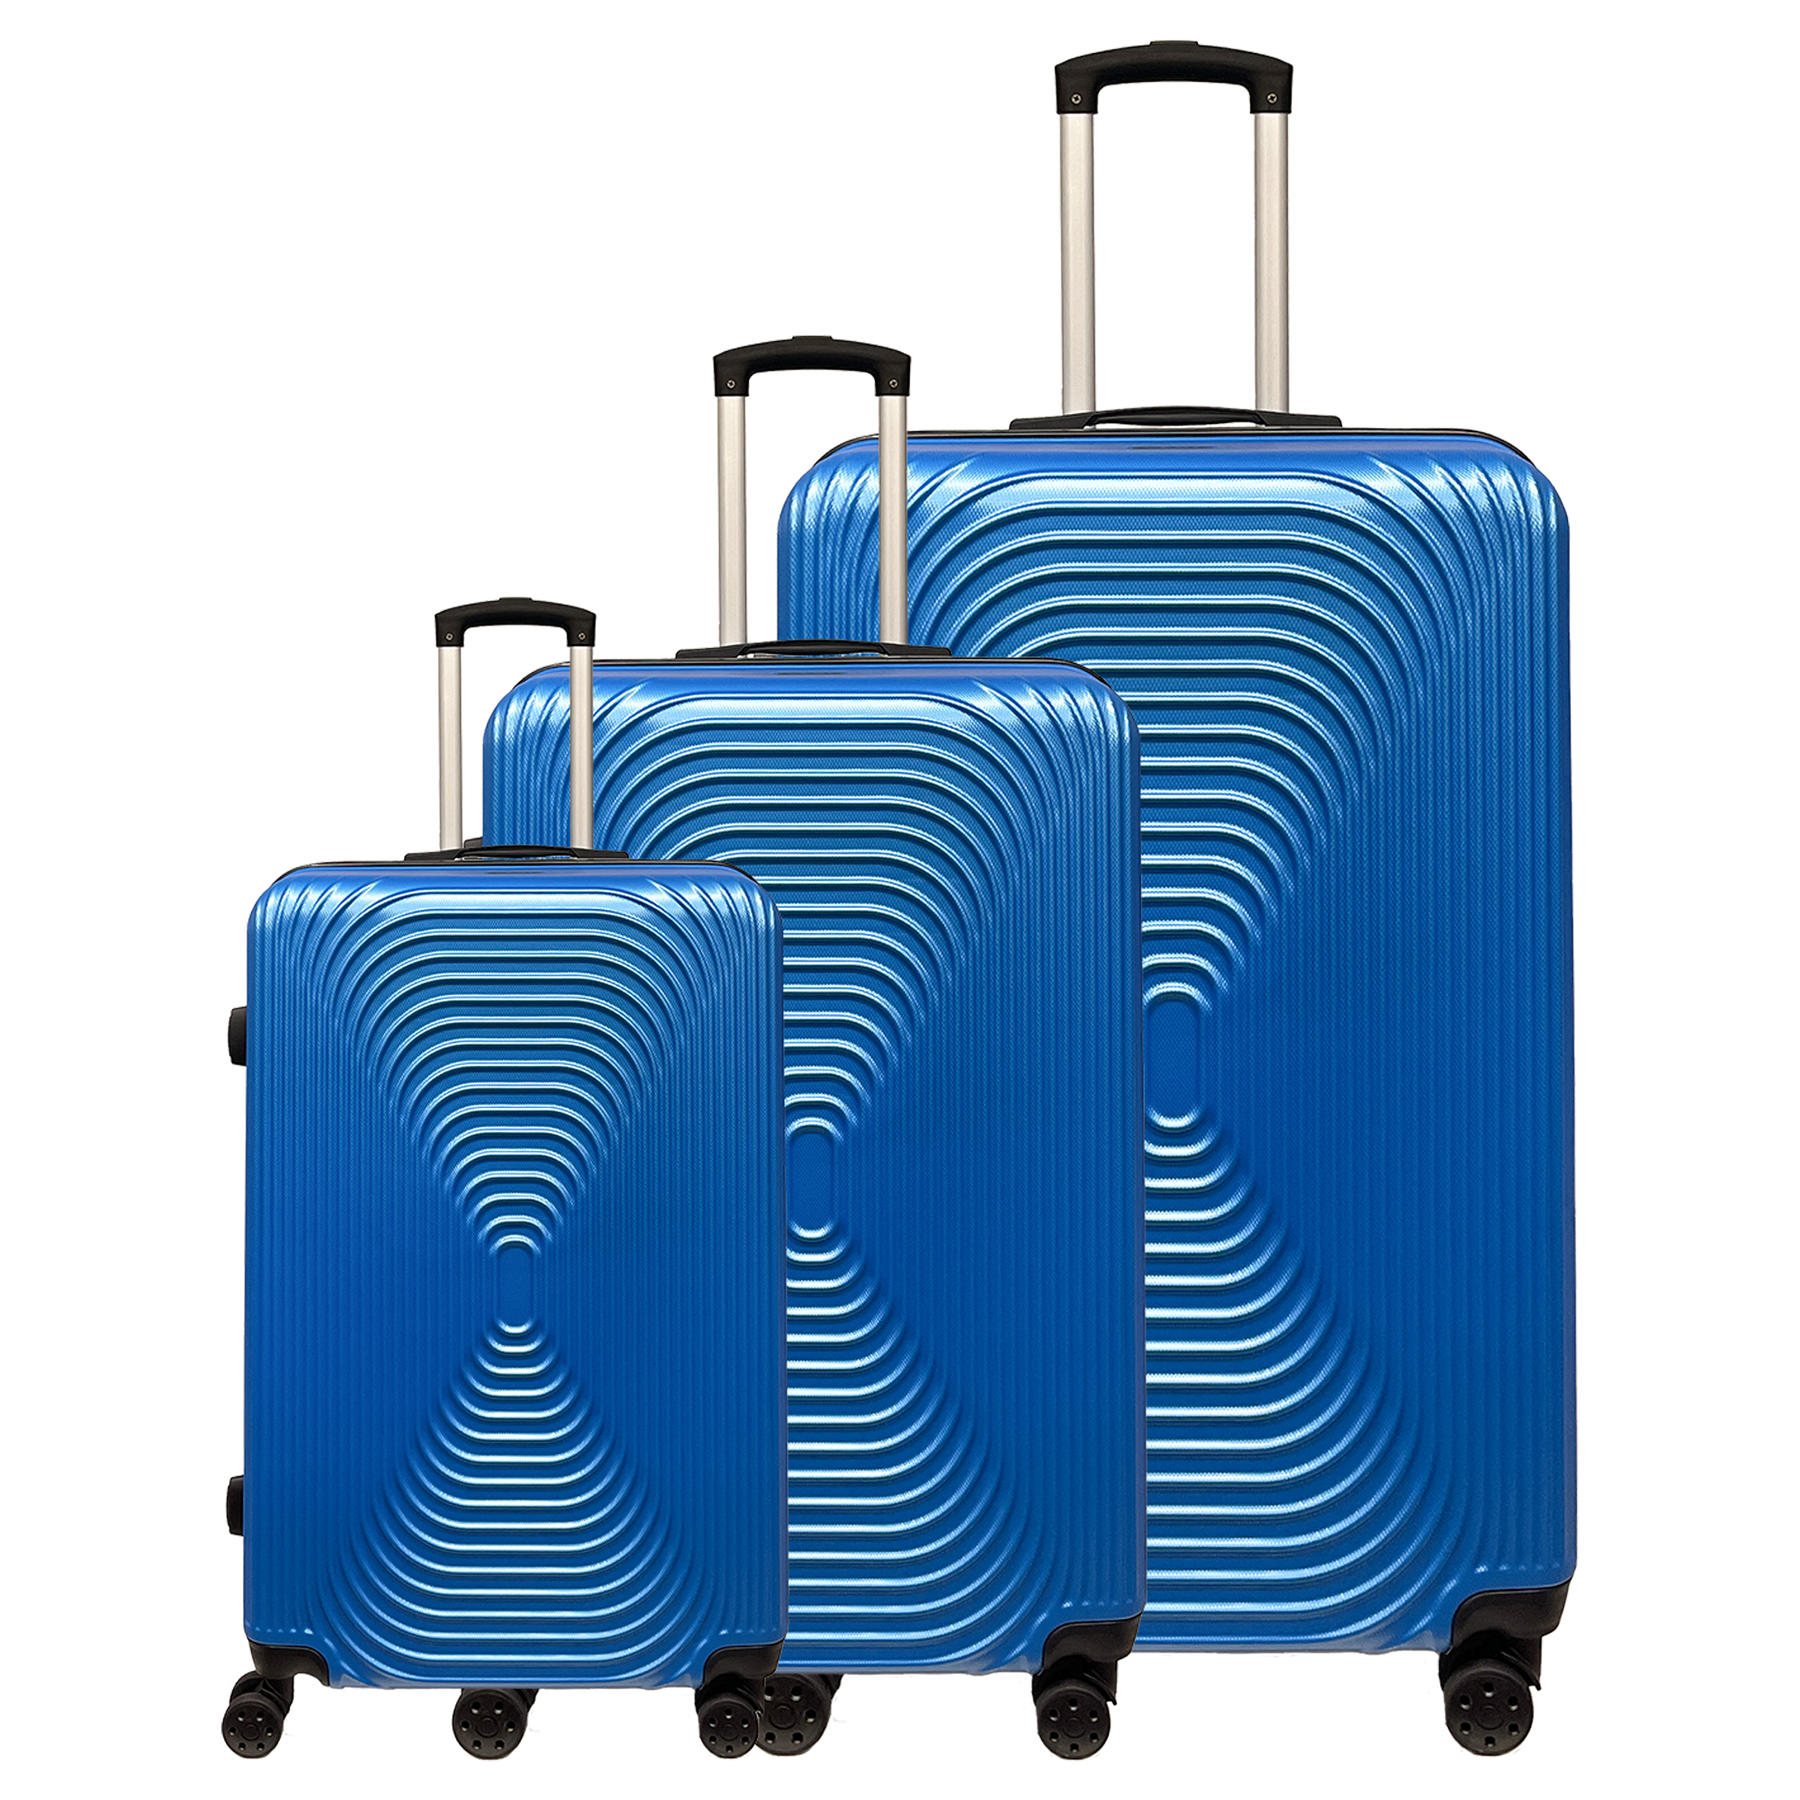 Set de 3 maletas trolley Ormi WavyLine en ABS rígido ultraligero: pequeña, mediana y grande